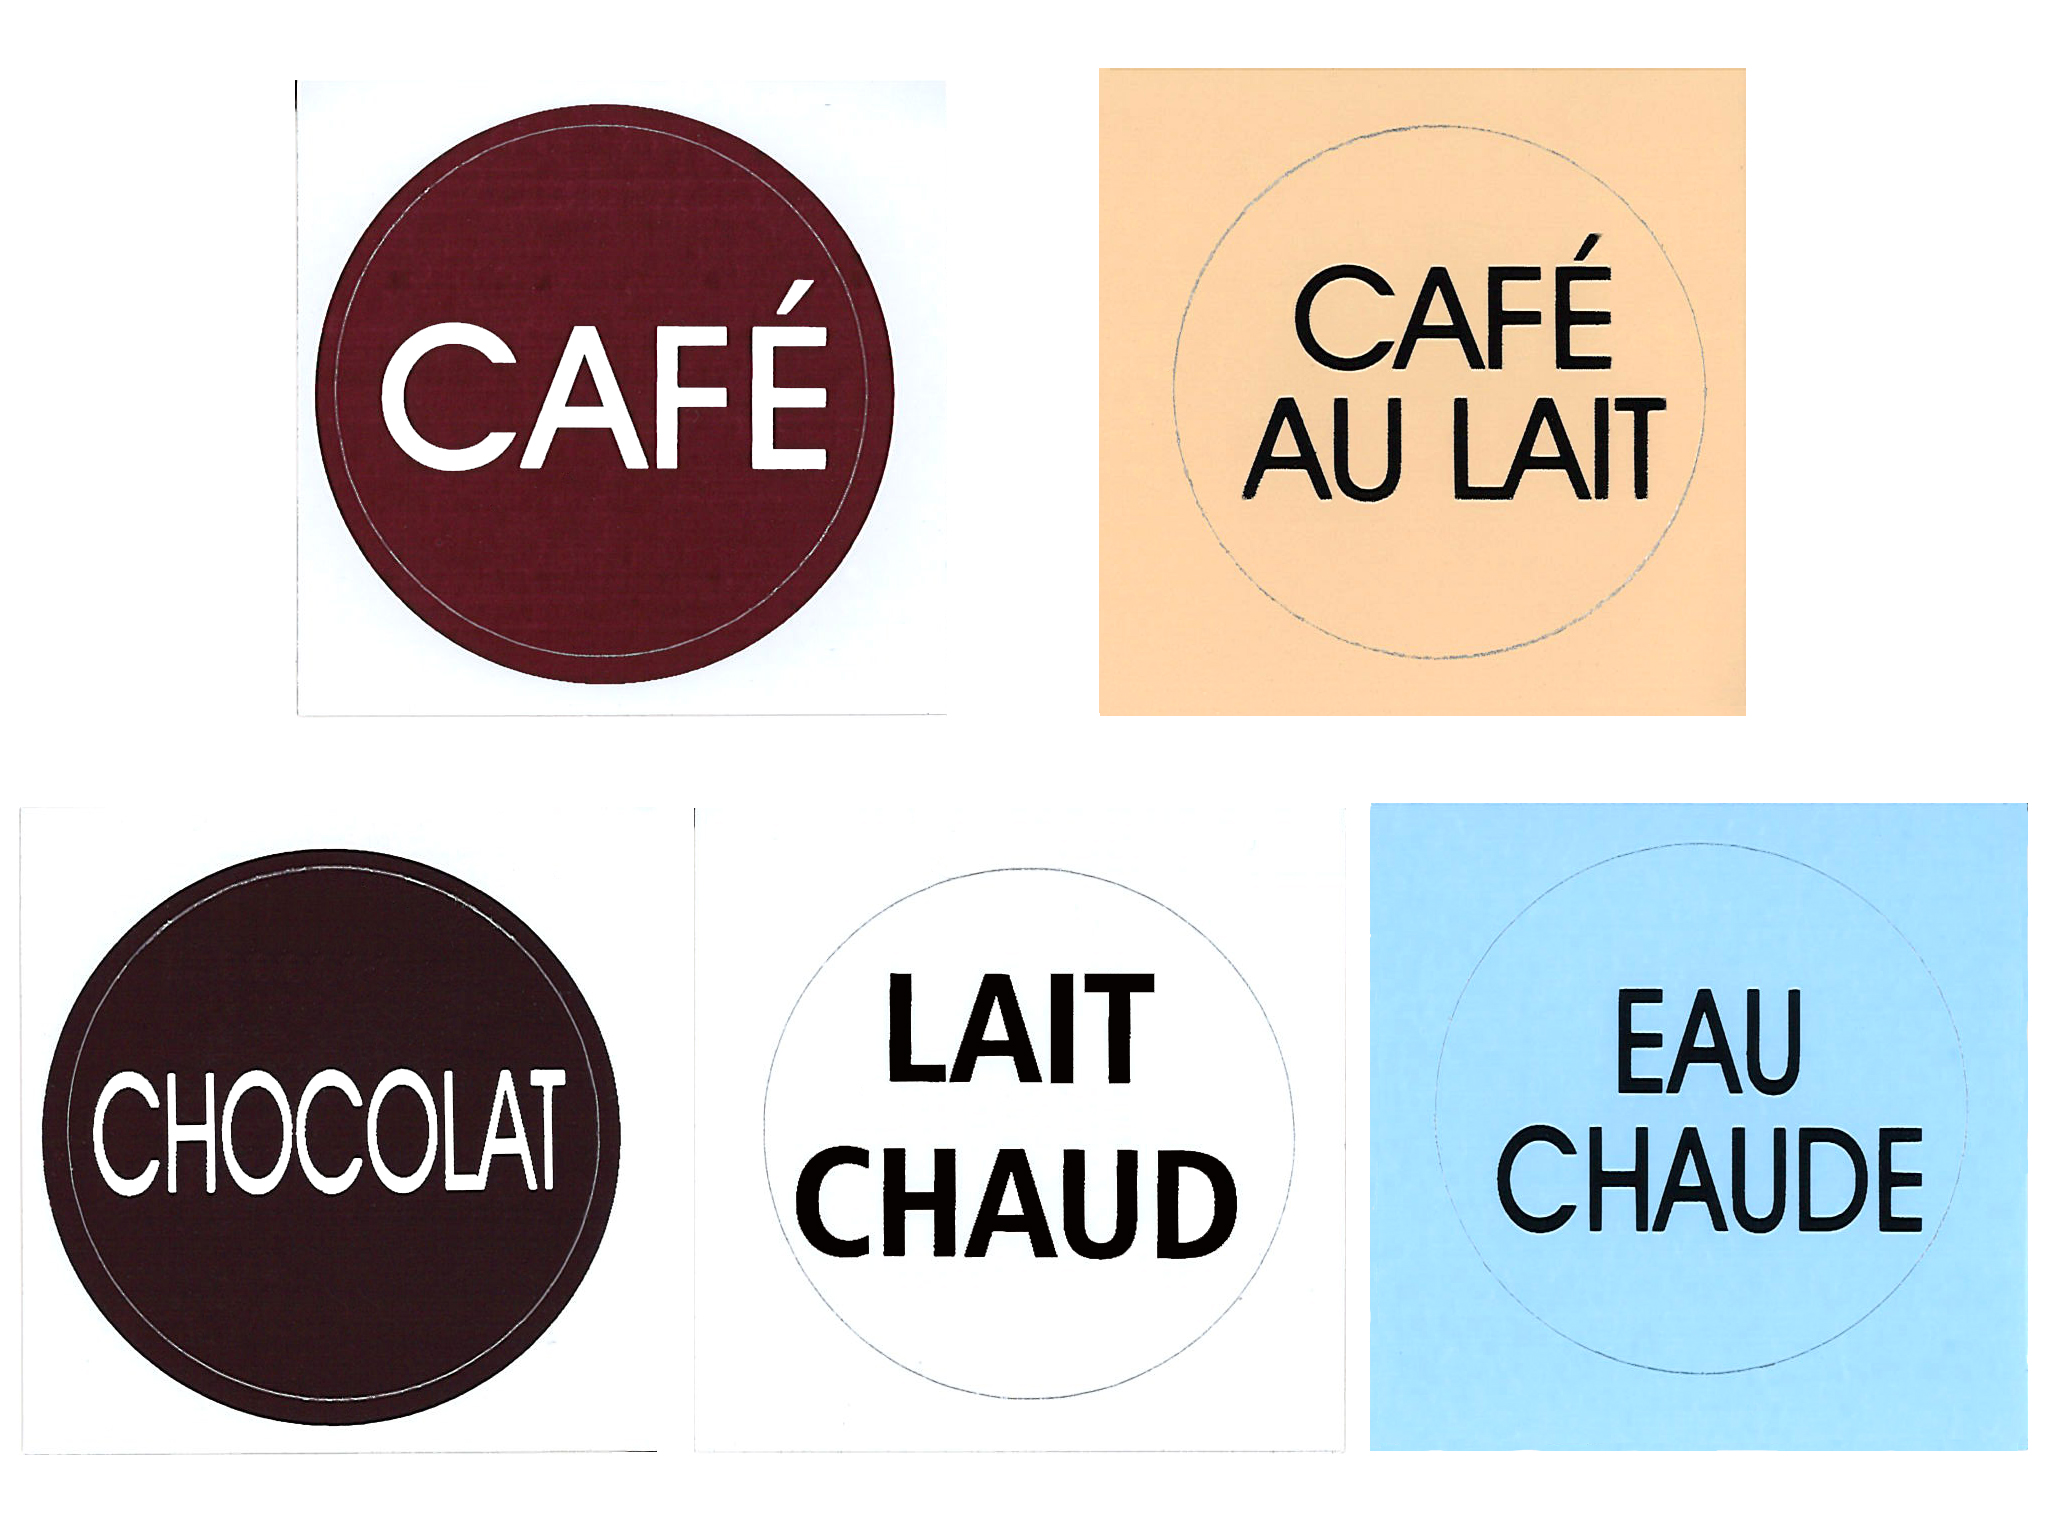 LABEL-CAFE - Zakje van 10 stickers "CAFE" - Isobel